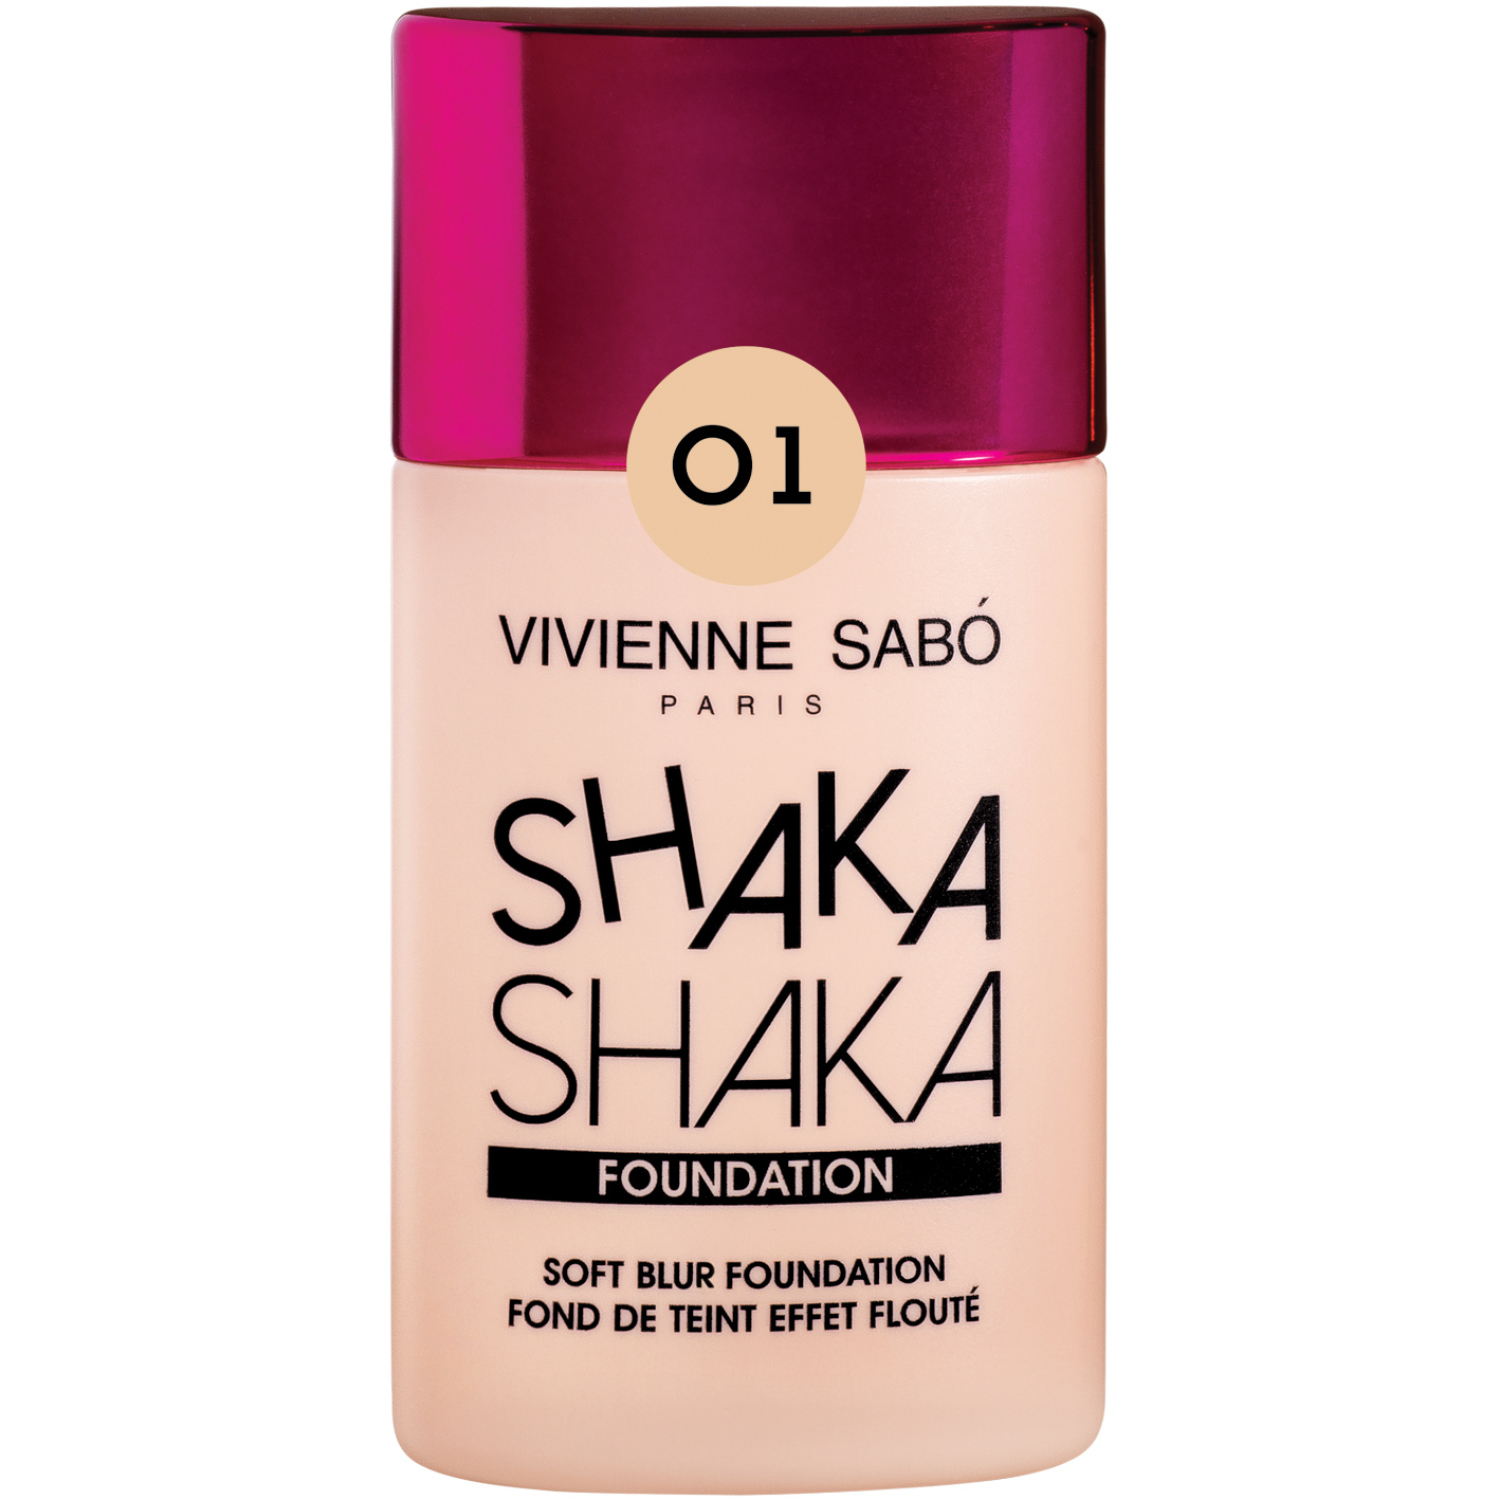 Тональный крем Vivienne Sabo Shaka Shaka, крем-флюид  с натуральным блюр-эффектом, тон 01, светло-бежевый, 25мл.